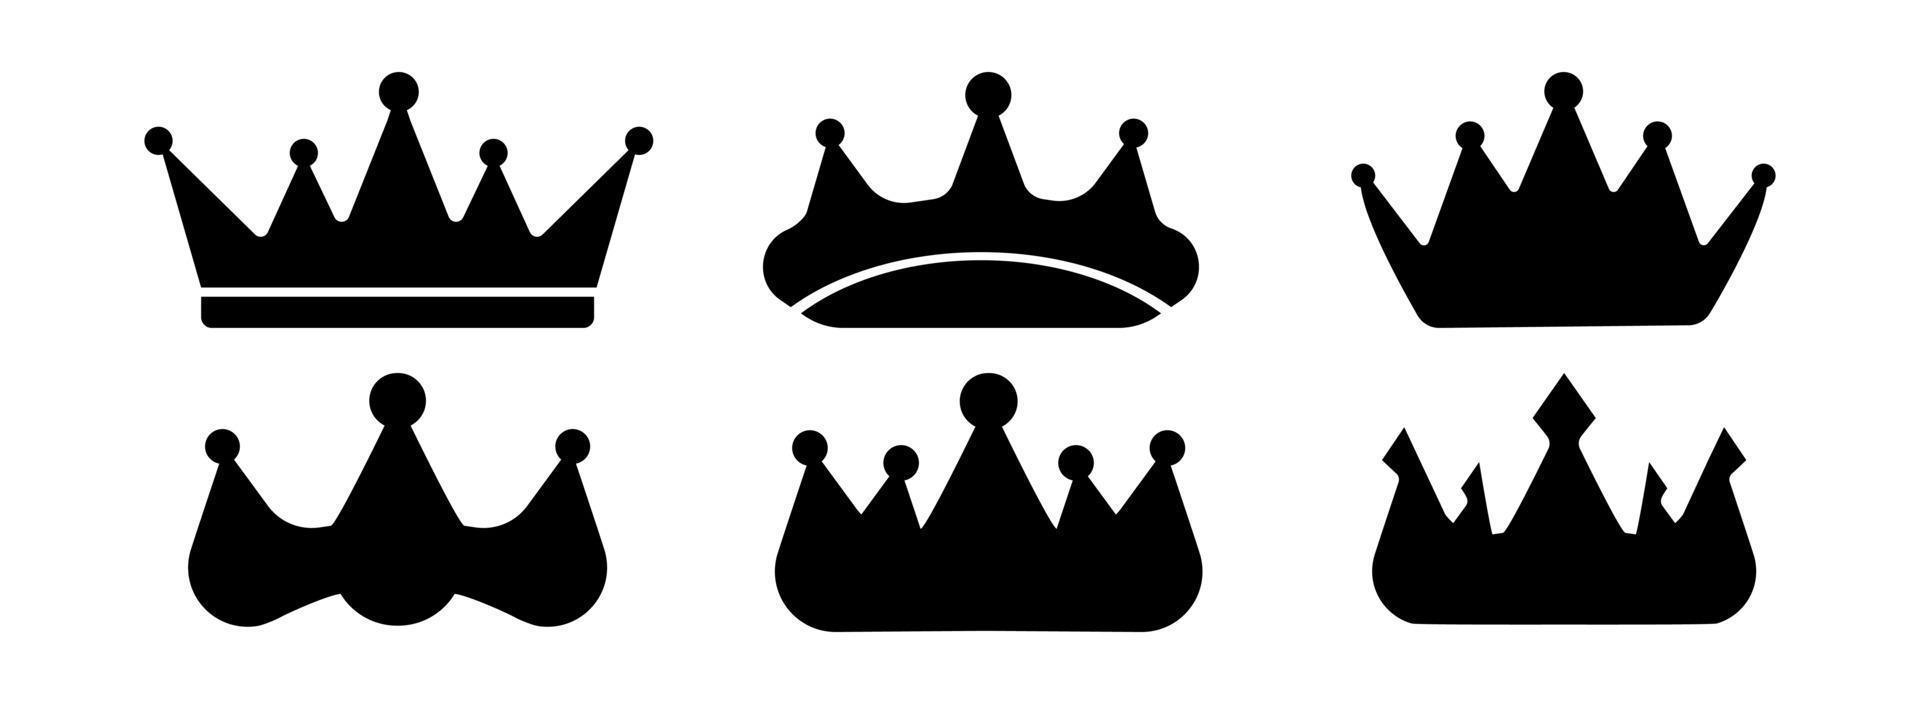 Kronensymbole. königin könig krönt luxus königliche krönung prinzessin tiara heraldische gewinner preis juwel lizenzgebühren monarch schwarze flache silhouette gesetzt. große Reihe von Vektor-Königskronen-Symbol auf weißem Hintergrund. vektor